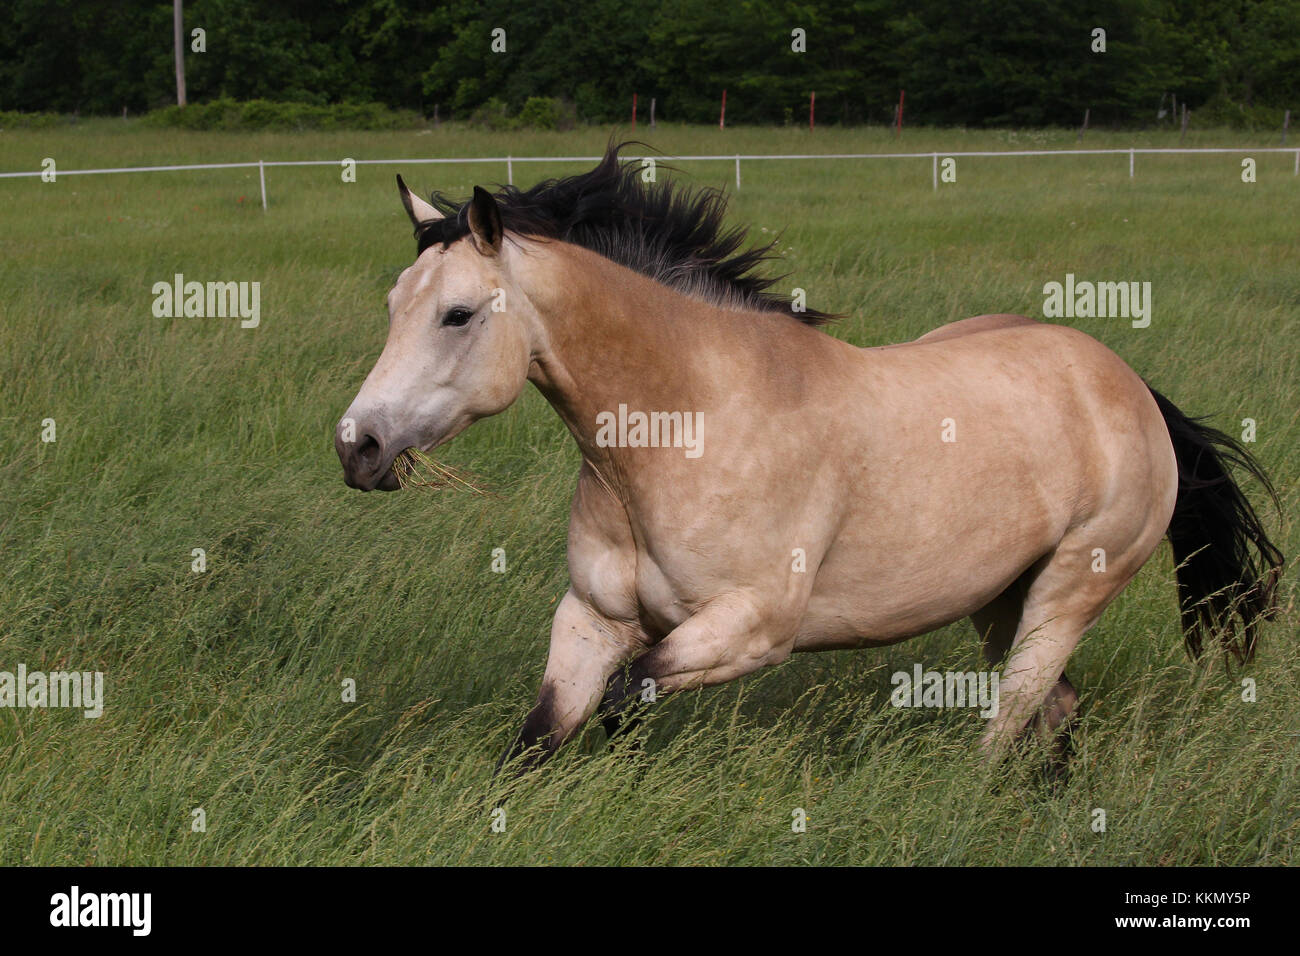 Calendario de caballos fotografías e imágenes de alta resolución - Alamy